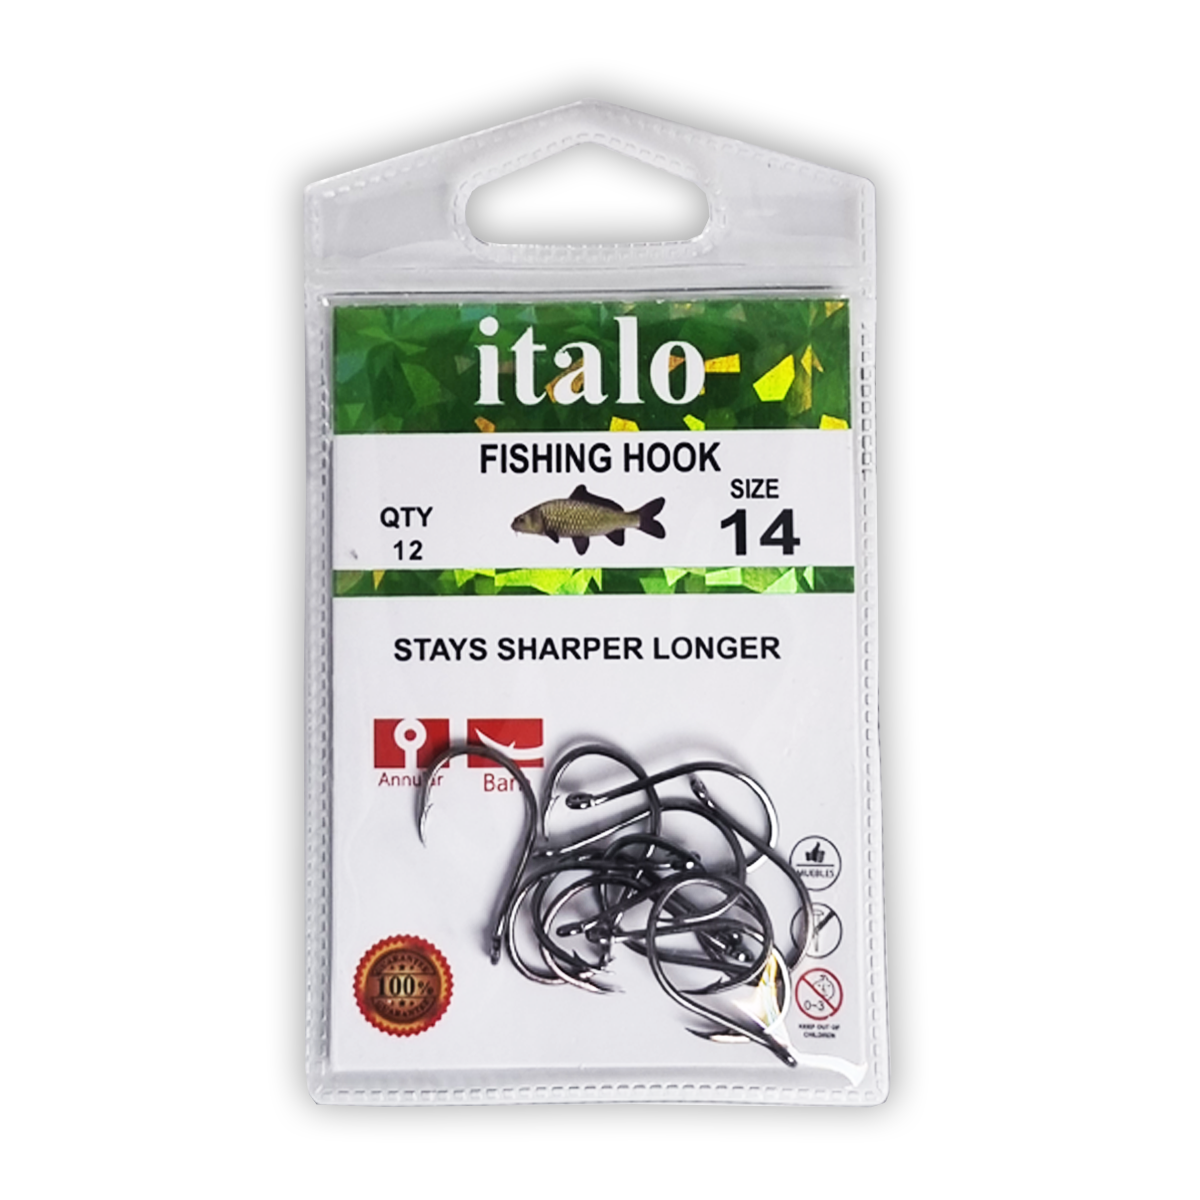 Fishing Hooks, Stay Sharper Longer, Pack of 14pcs - Size 12 - Italo